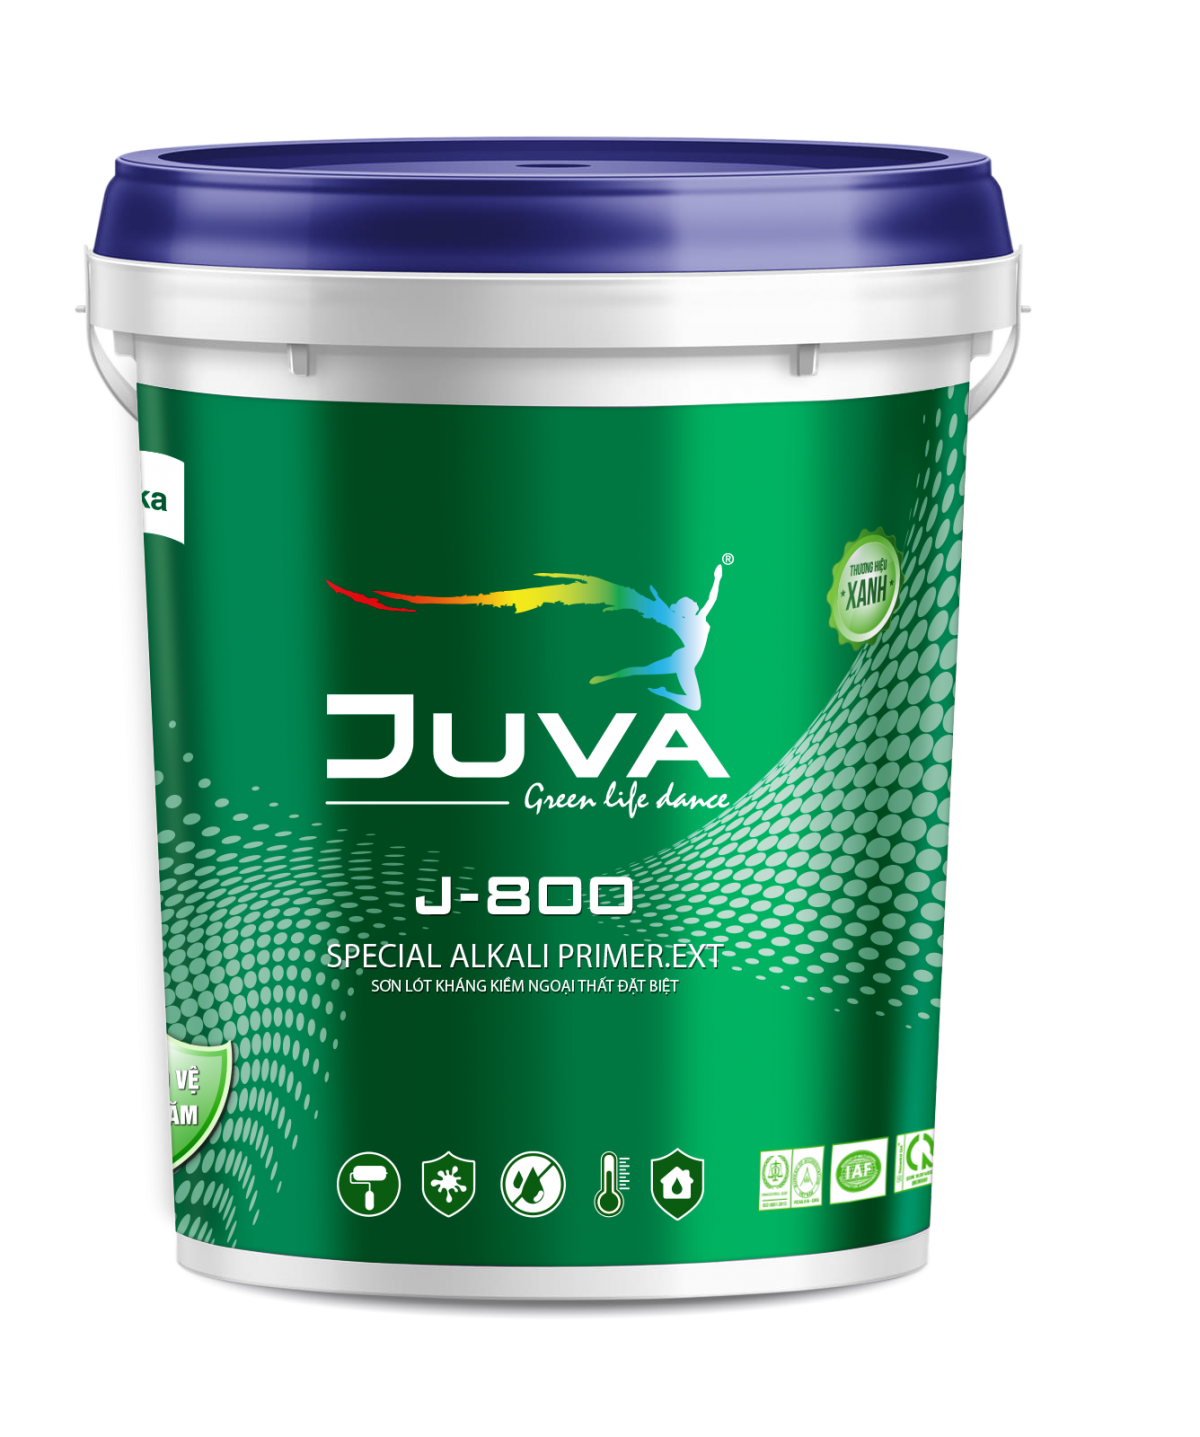 Sơn lót Juva kháng kiềm ngoại thất đặc biệt Juno sofa J-800 5kg